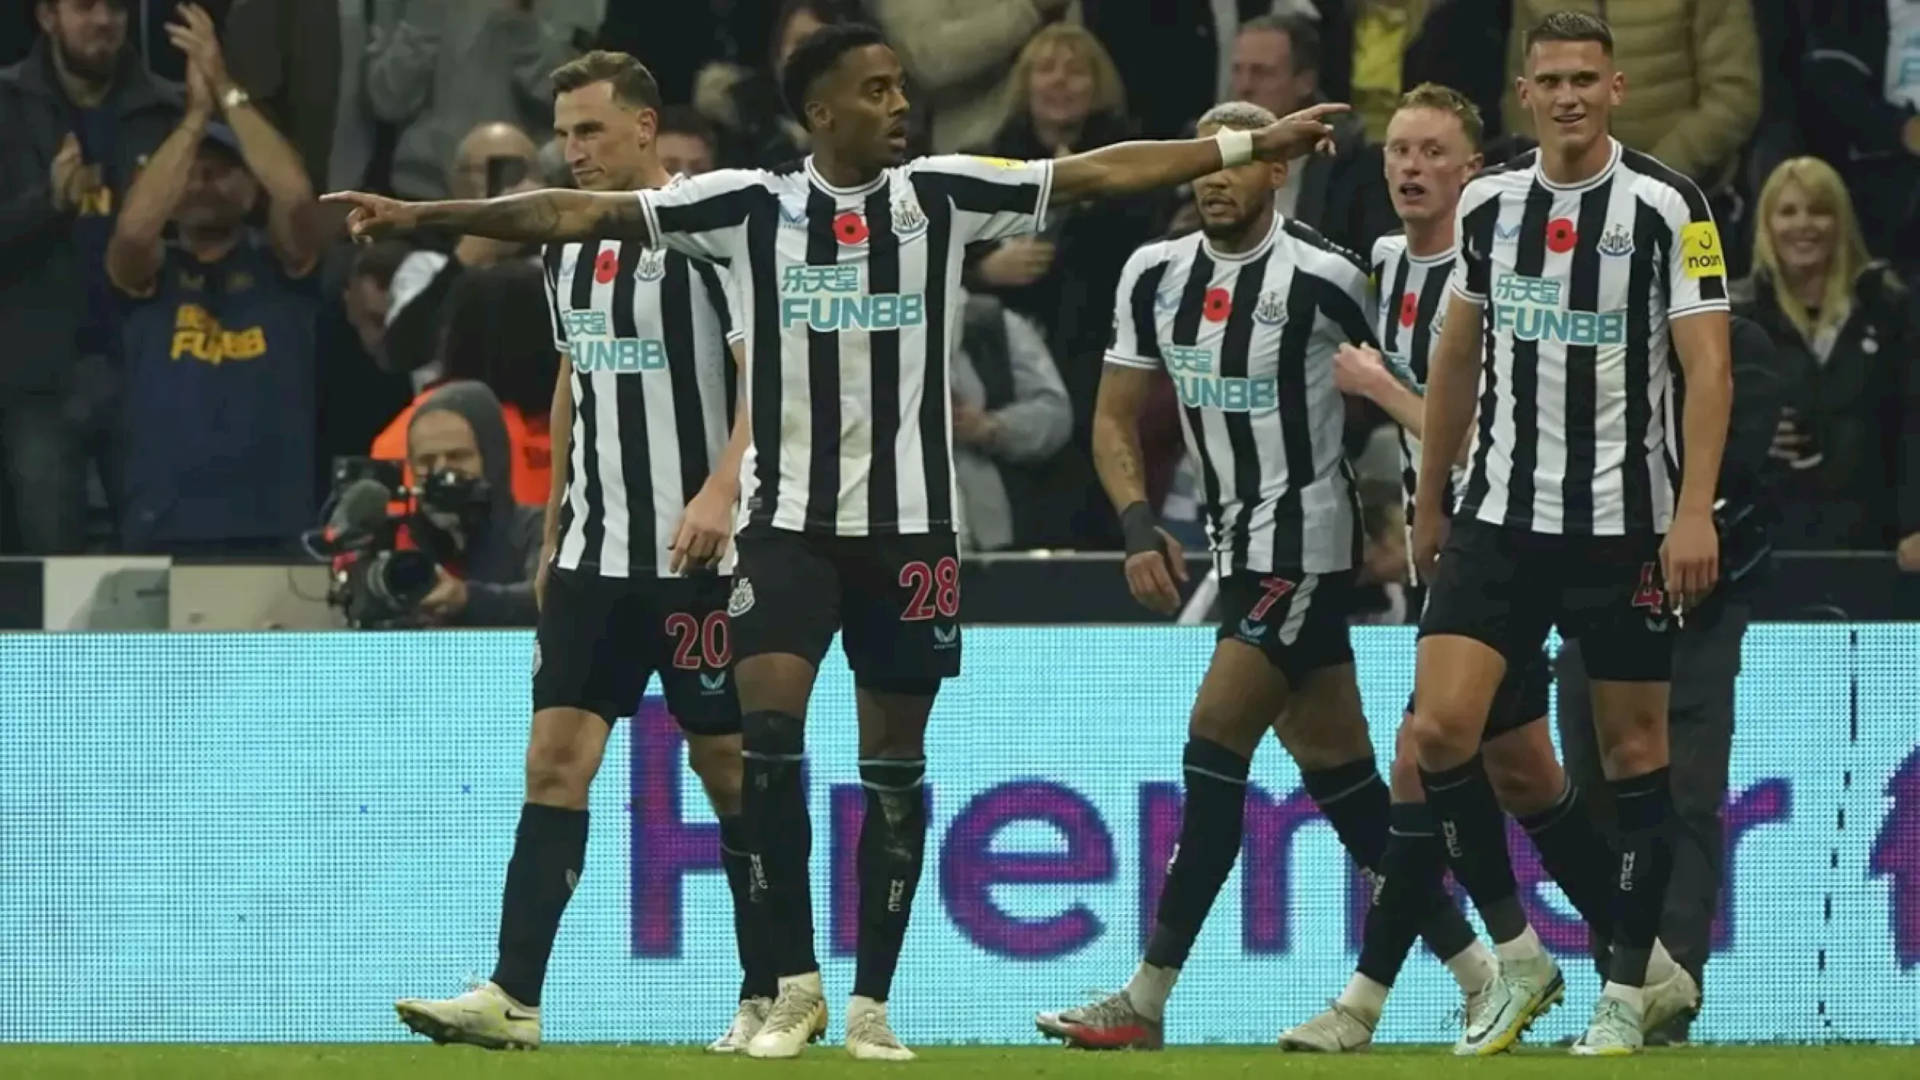 Se Newcastle United FC-spillere indtage feltet i højopløsning tapet! Wallpaper